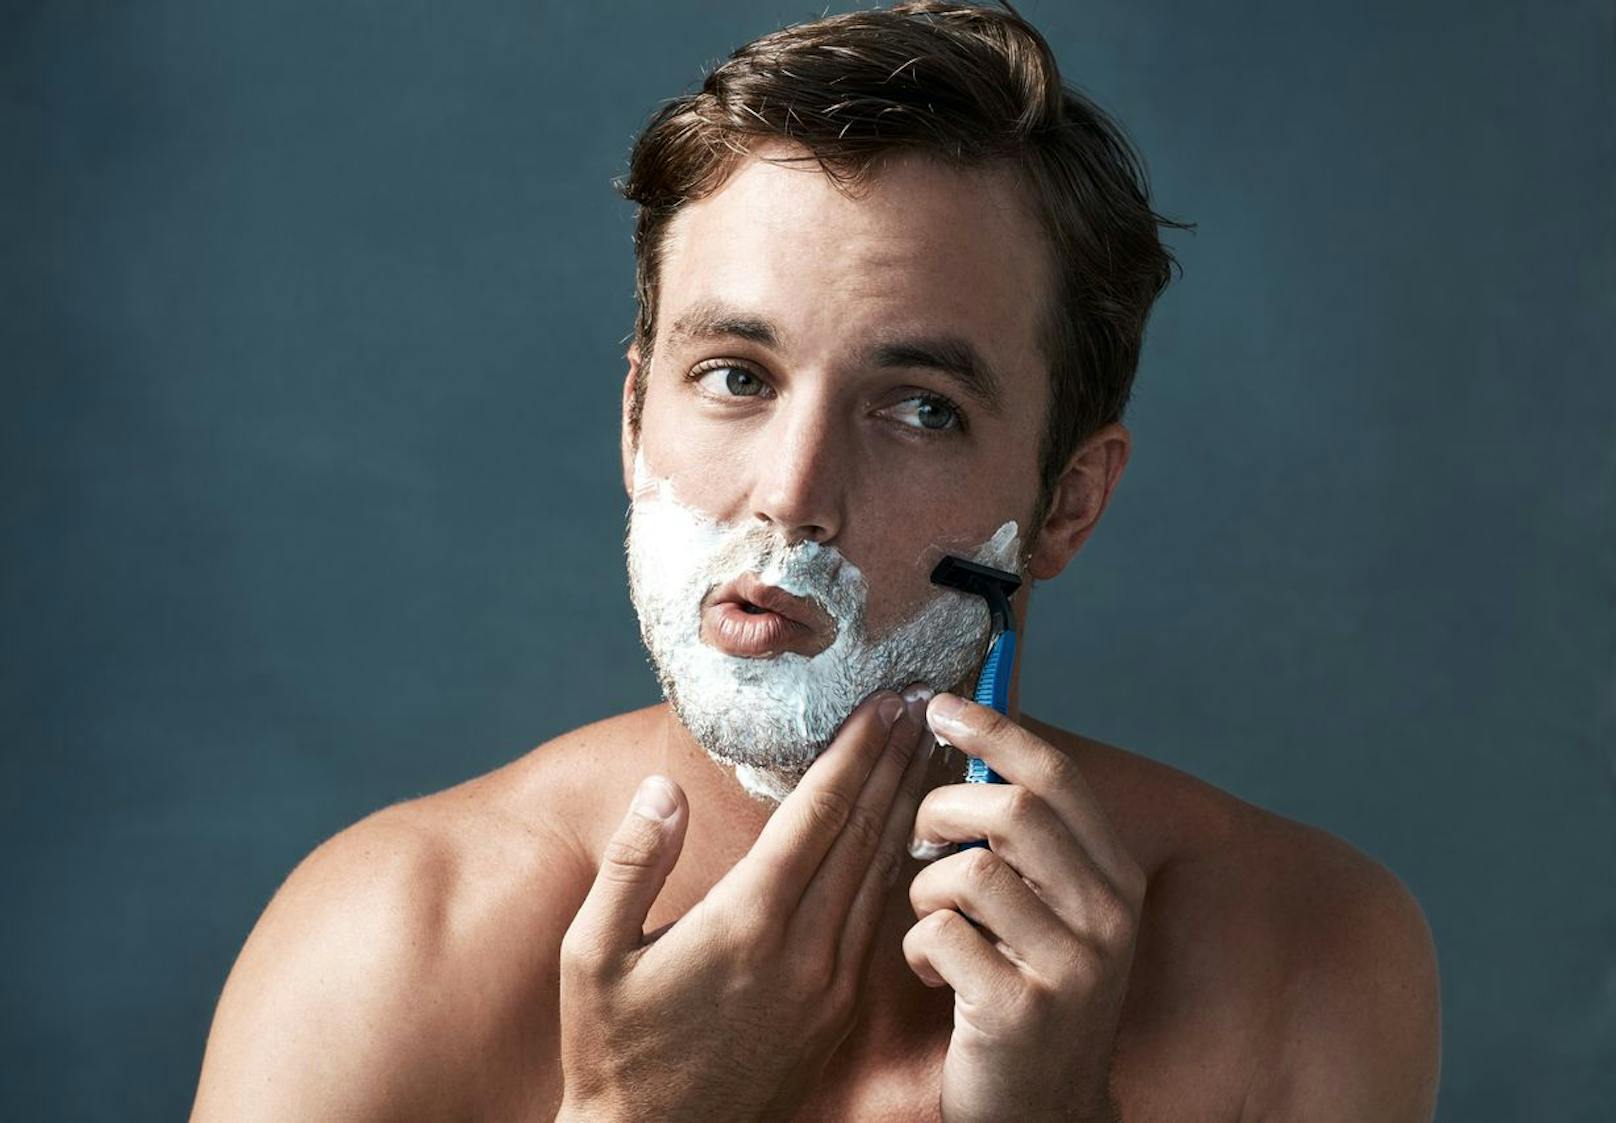 Eines der häufigsten Beauty-Fehler unter Männern ist, dass sich diese vor dem Duschen rasieren. Nach der Dusche ist der Bart noch ordentlich weich, da die Wärme die Poren öffnet. Außerdem wirst du in der Dusche auch etwaige Unreinheiten los. 